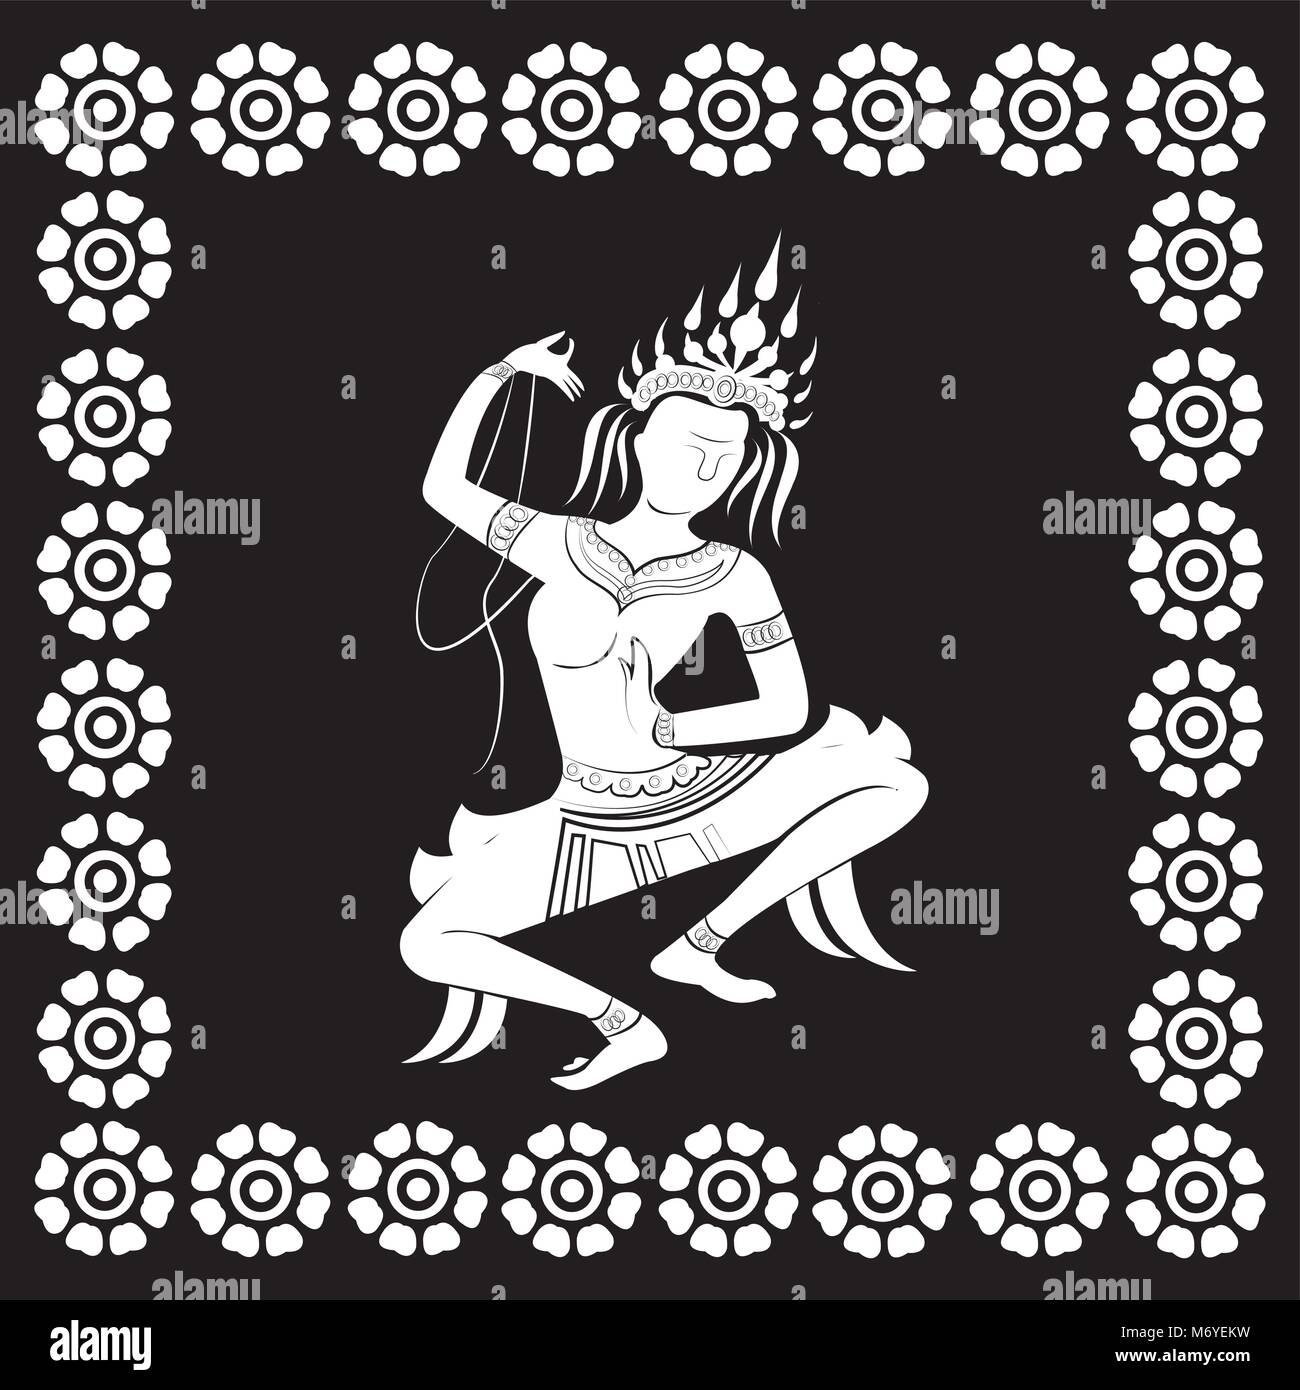 apsara dance, white silhouette on black background, vector illustration Stock Vector